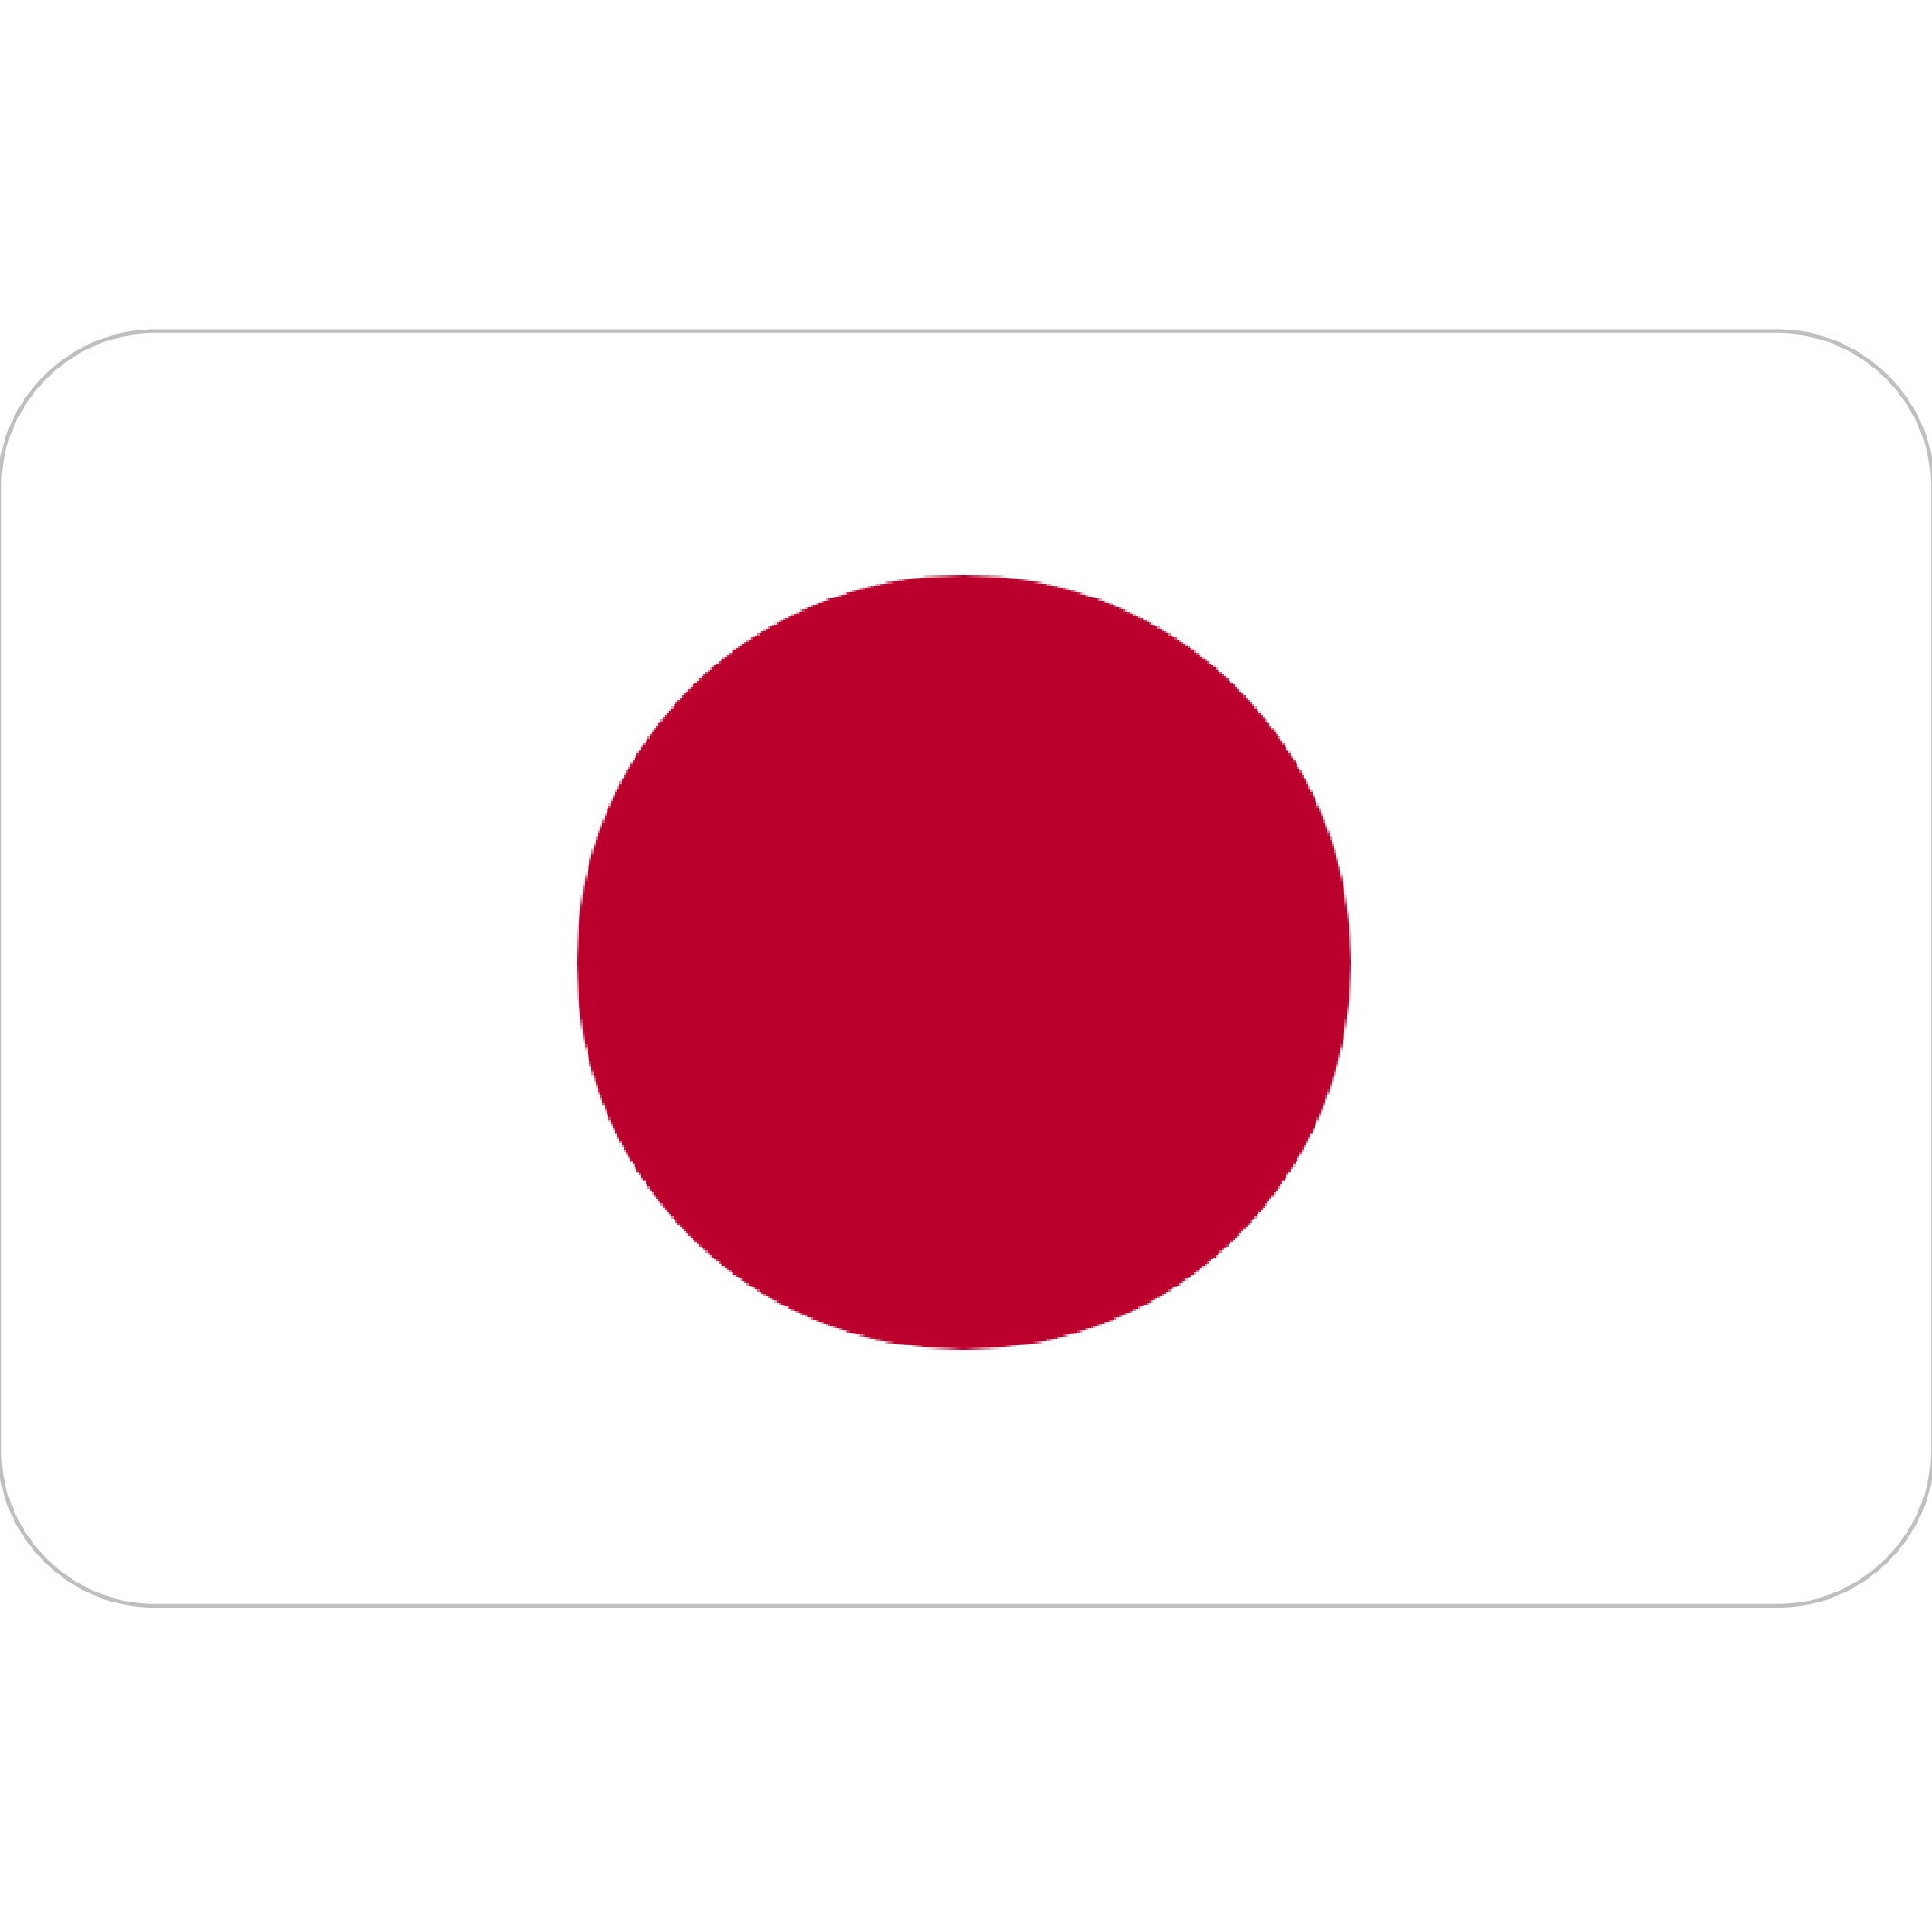 Japan (¥)